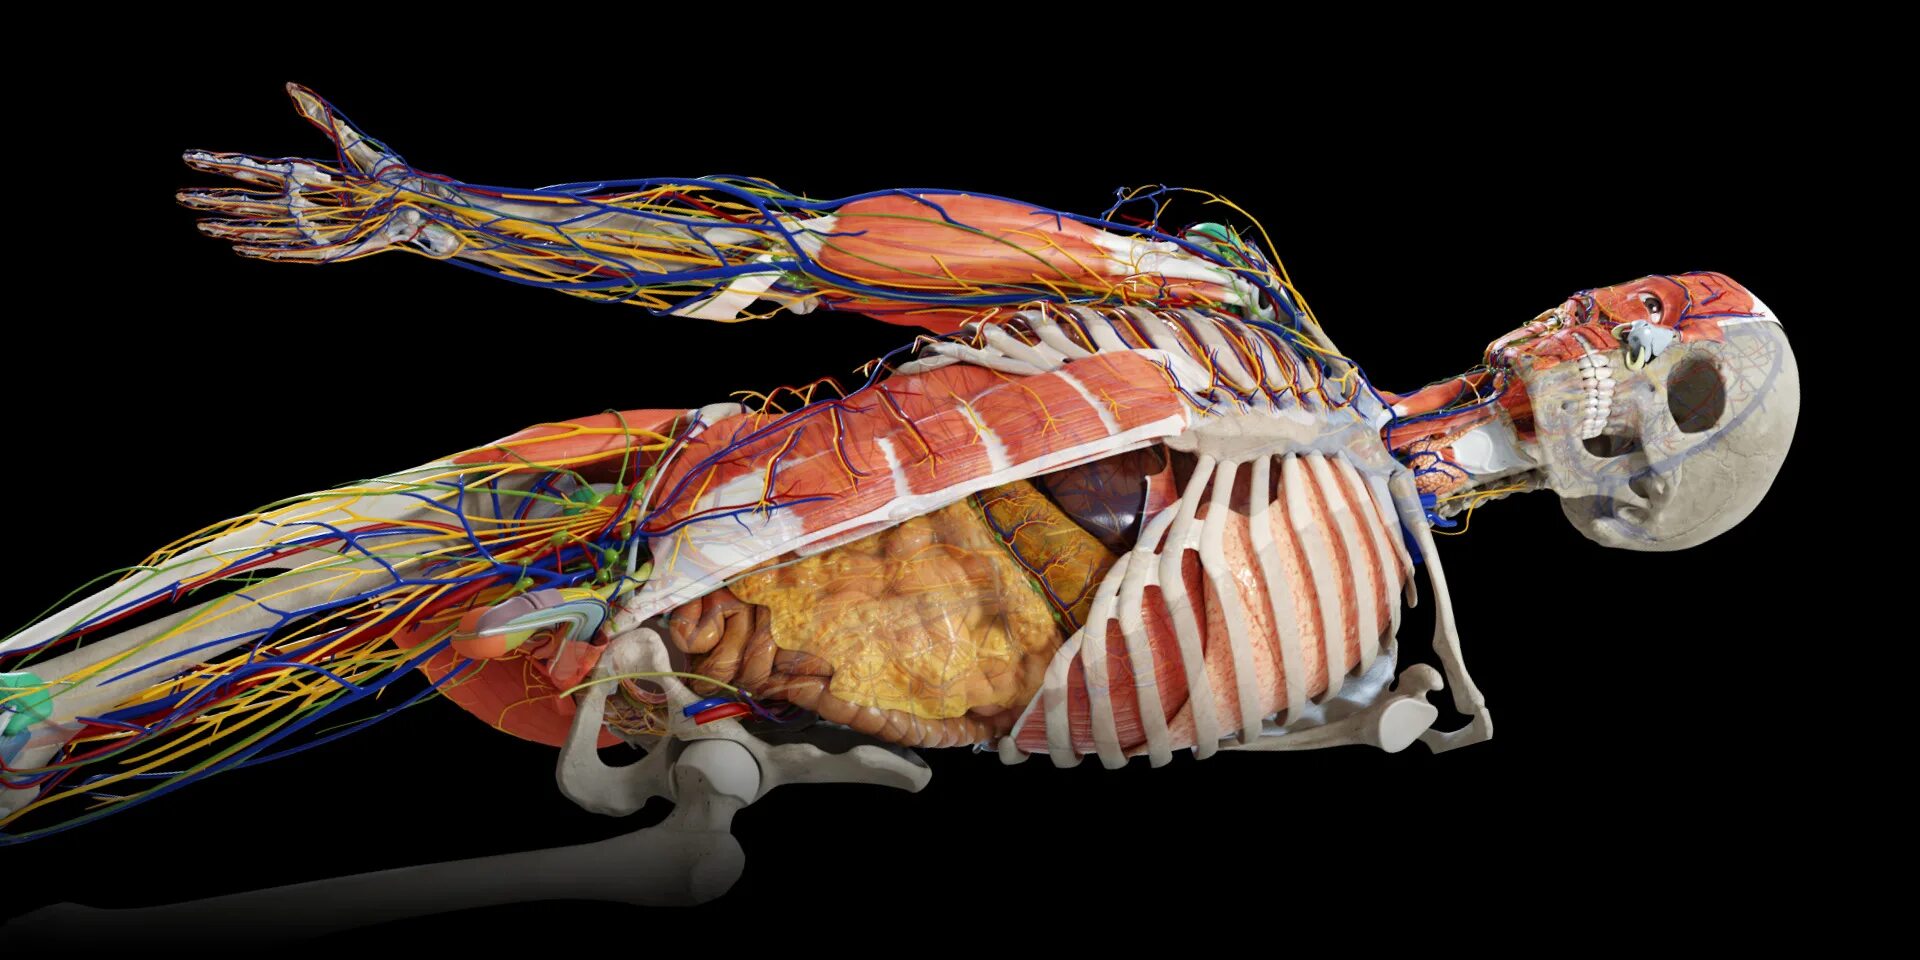 Анатомия твц. Анатомия человека внутренние органы 3д атлас. Анатомический атлас человека 3д. Anatomy Learning 3d анатомический атлас. Anatomy 3d мышцы.